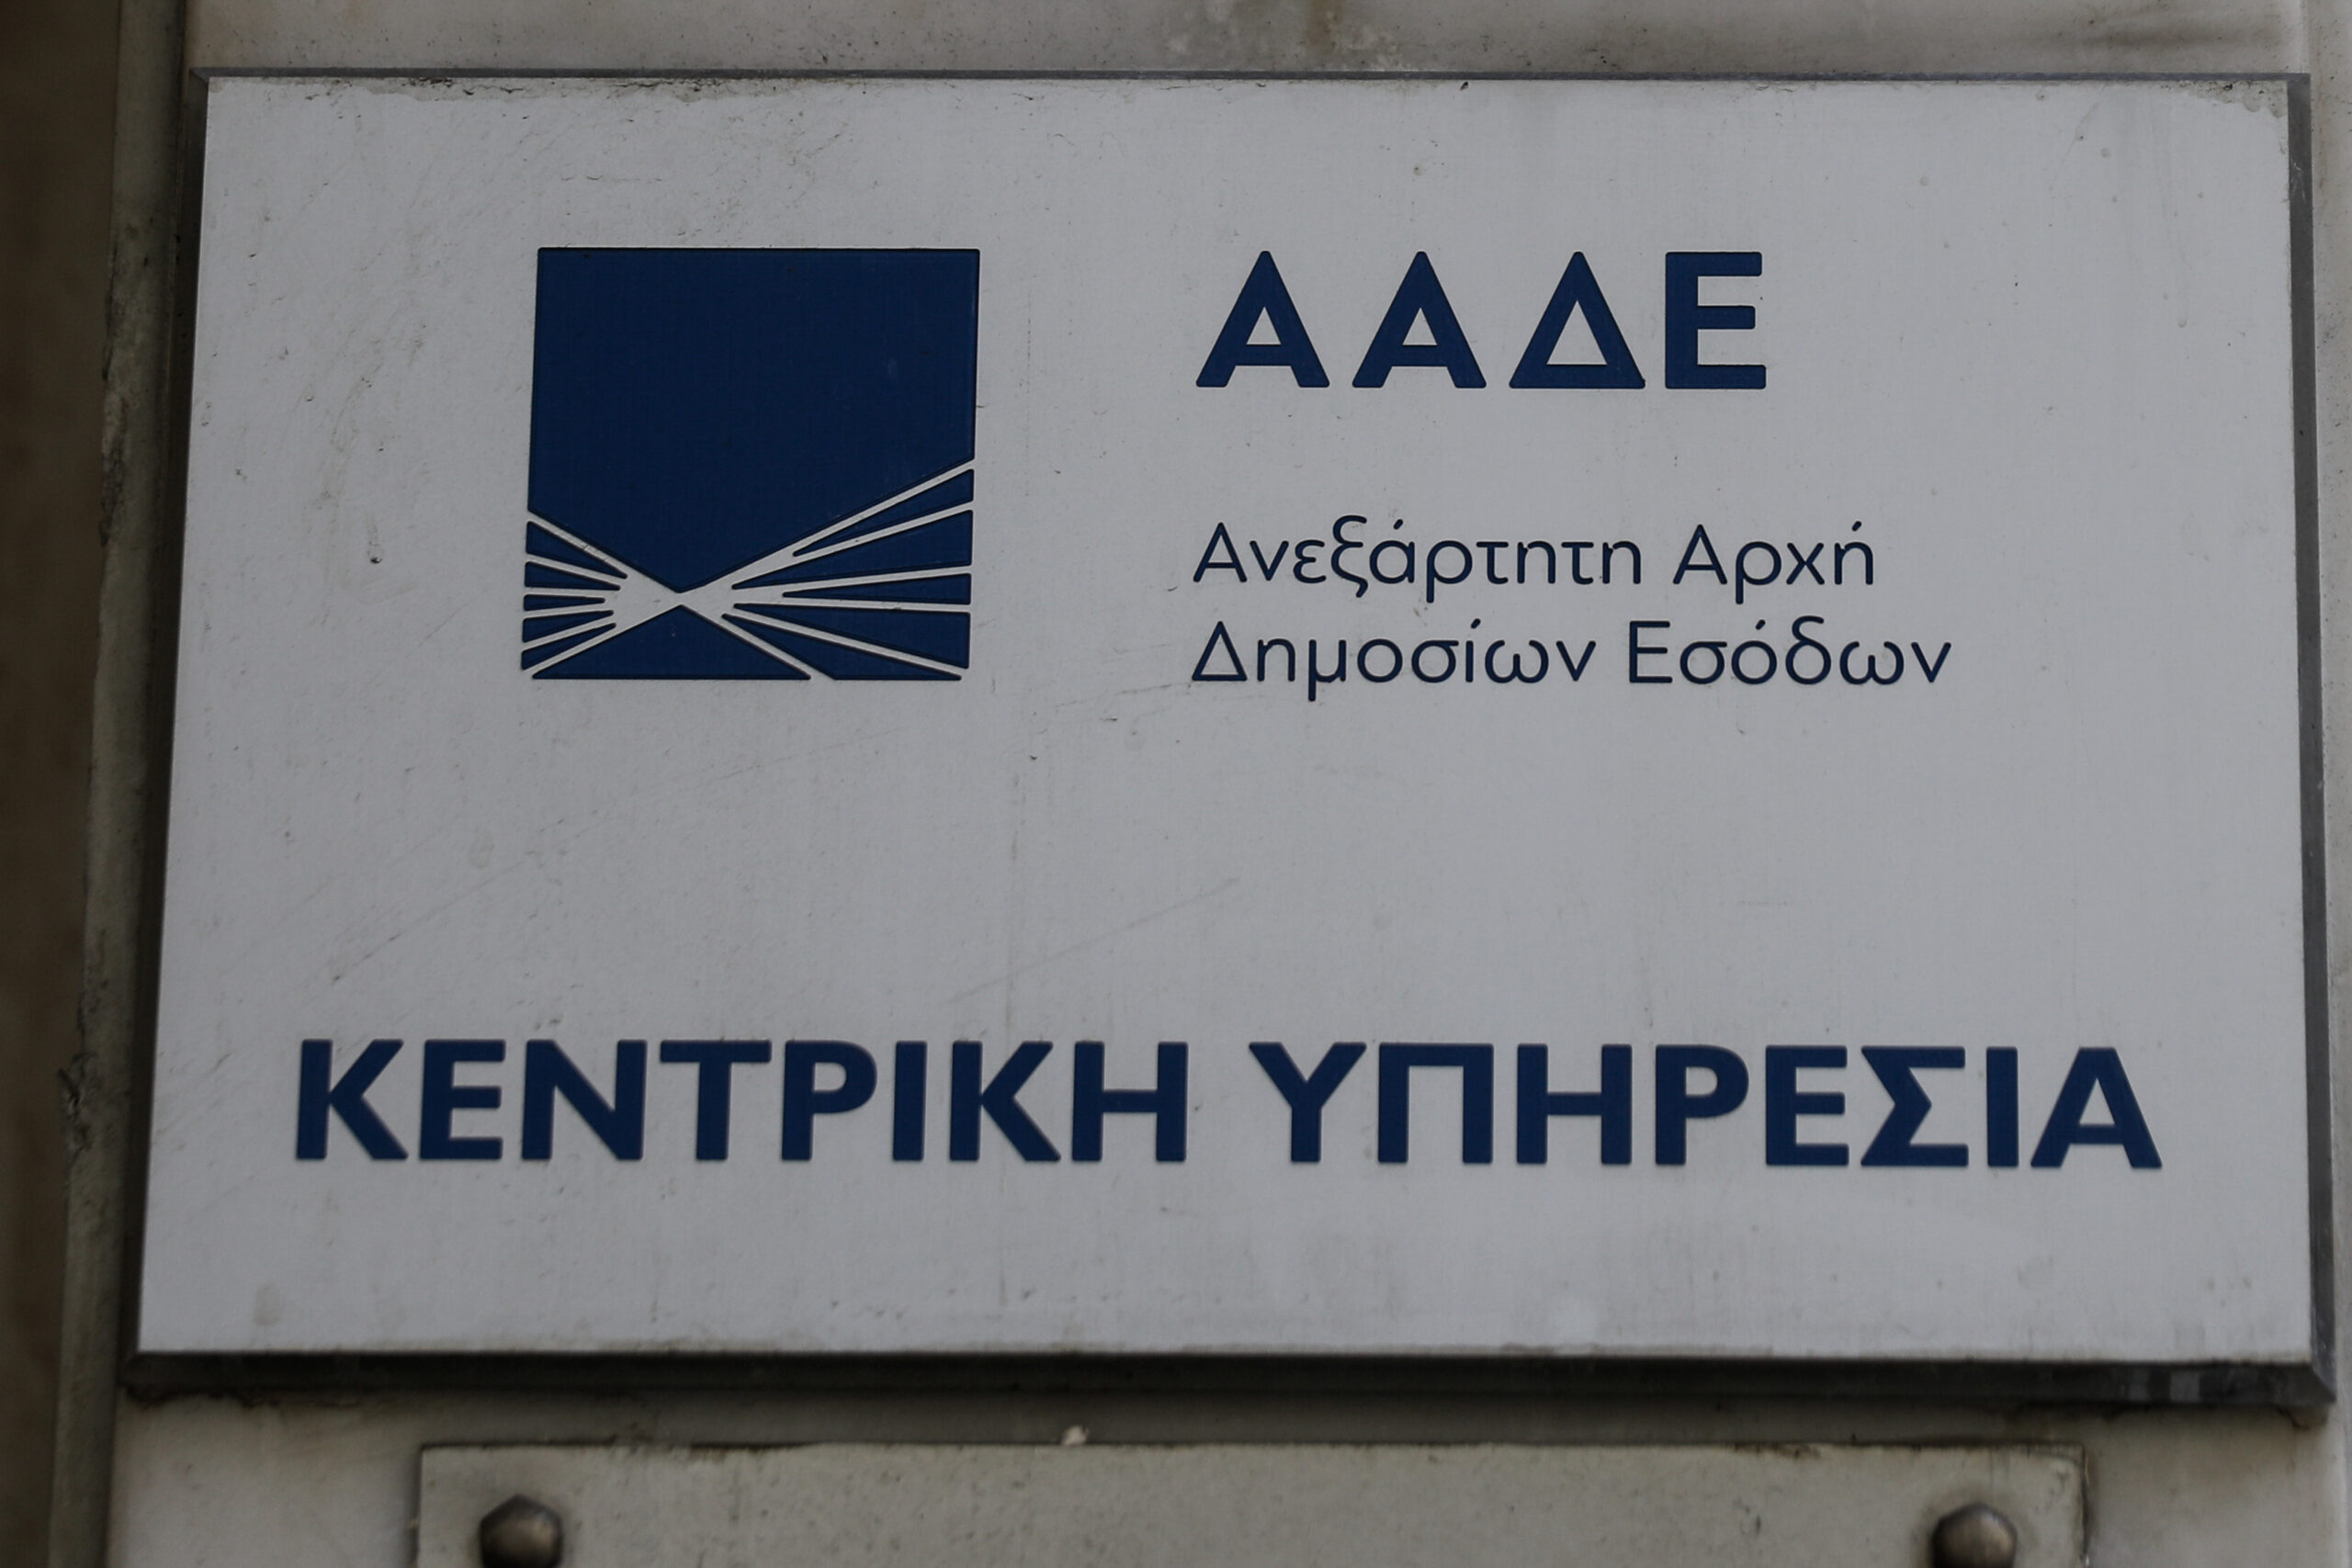 Ψηφιοποιείται η διαδικασία ακινητοποίησης οχημάτων Ομογενών στην Ελλάδα